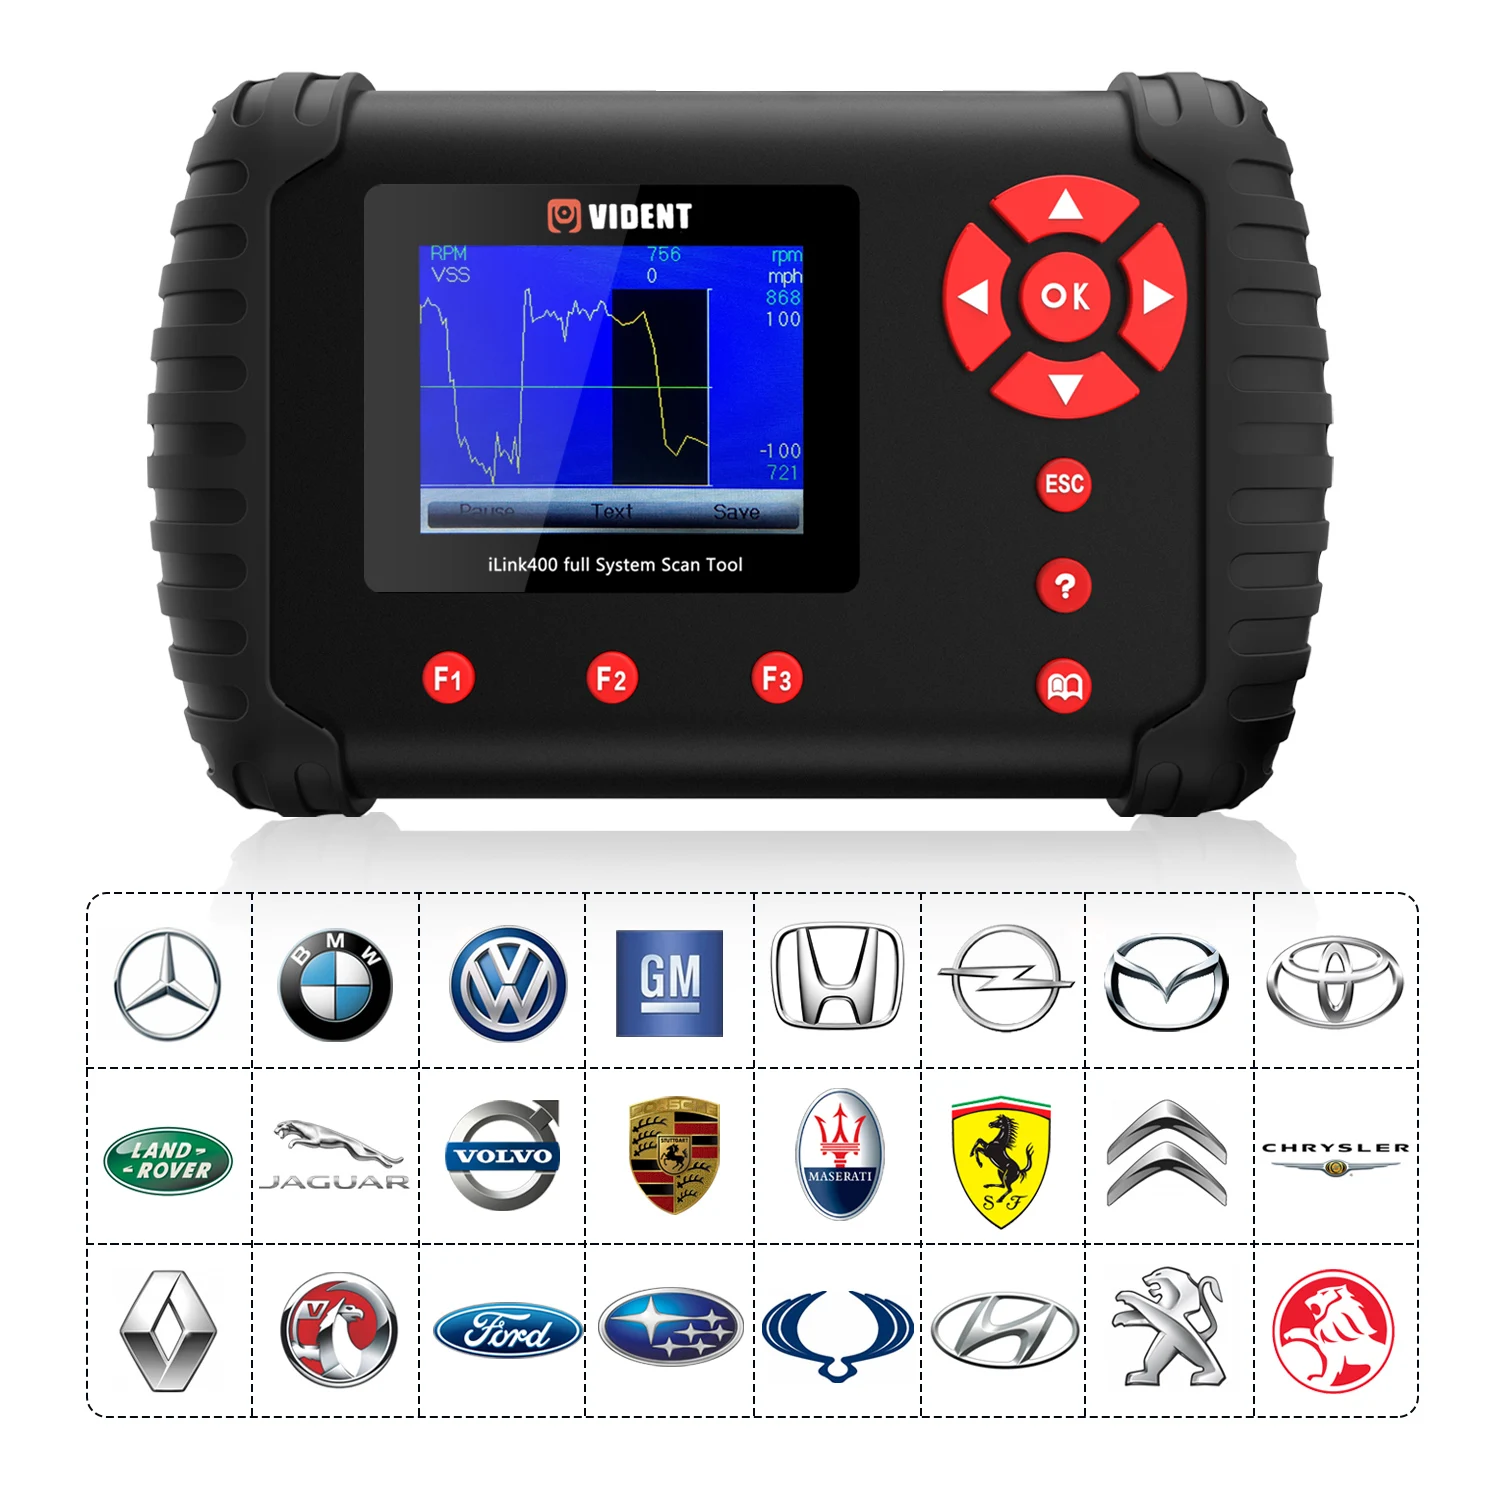 OBD2 считыватель кодов Vident iLink400 полная система Автомобильный сканер OBDII автомобильный диагностический инструмент ABS EPB DPF TPMS программирование ключей